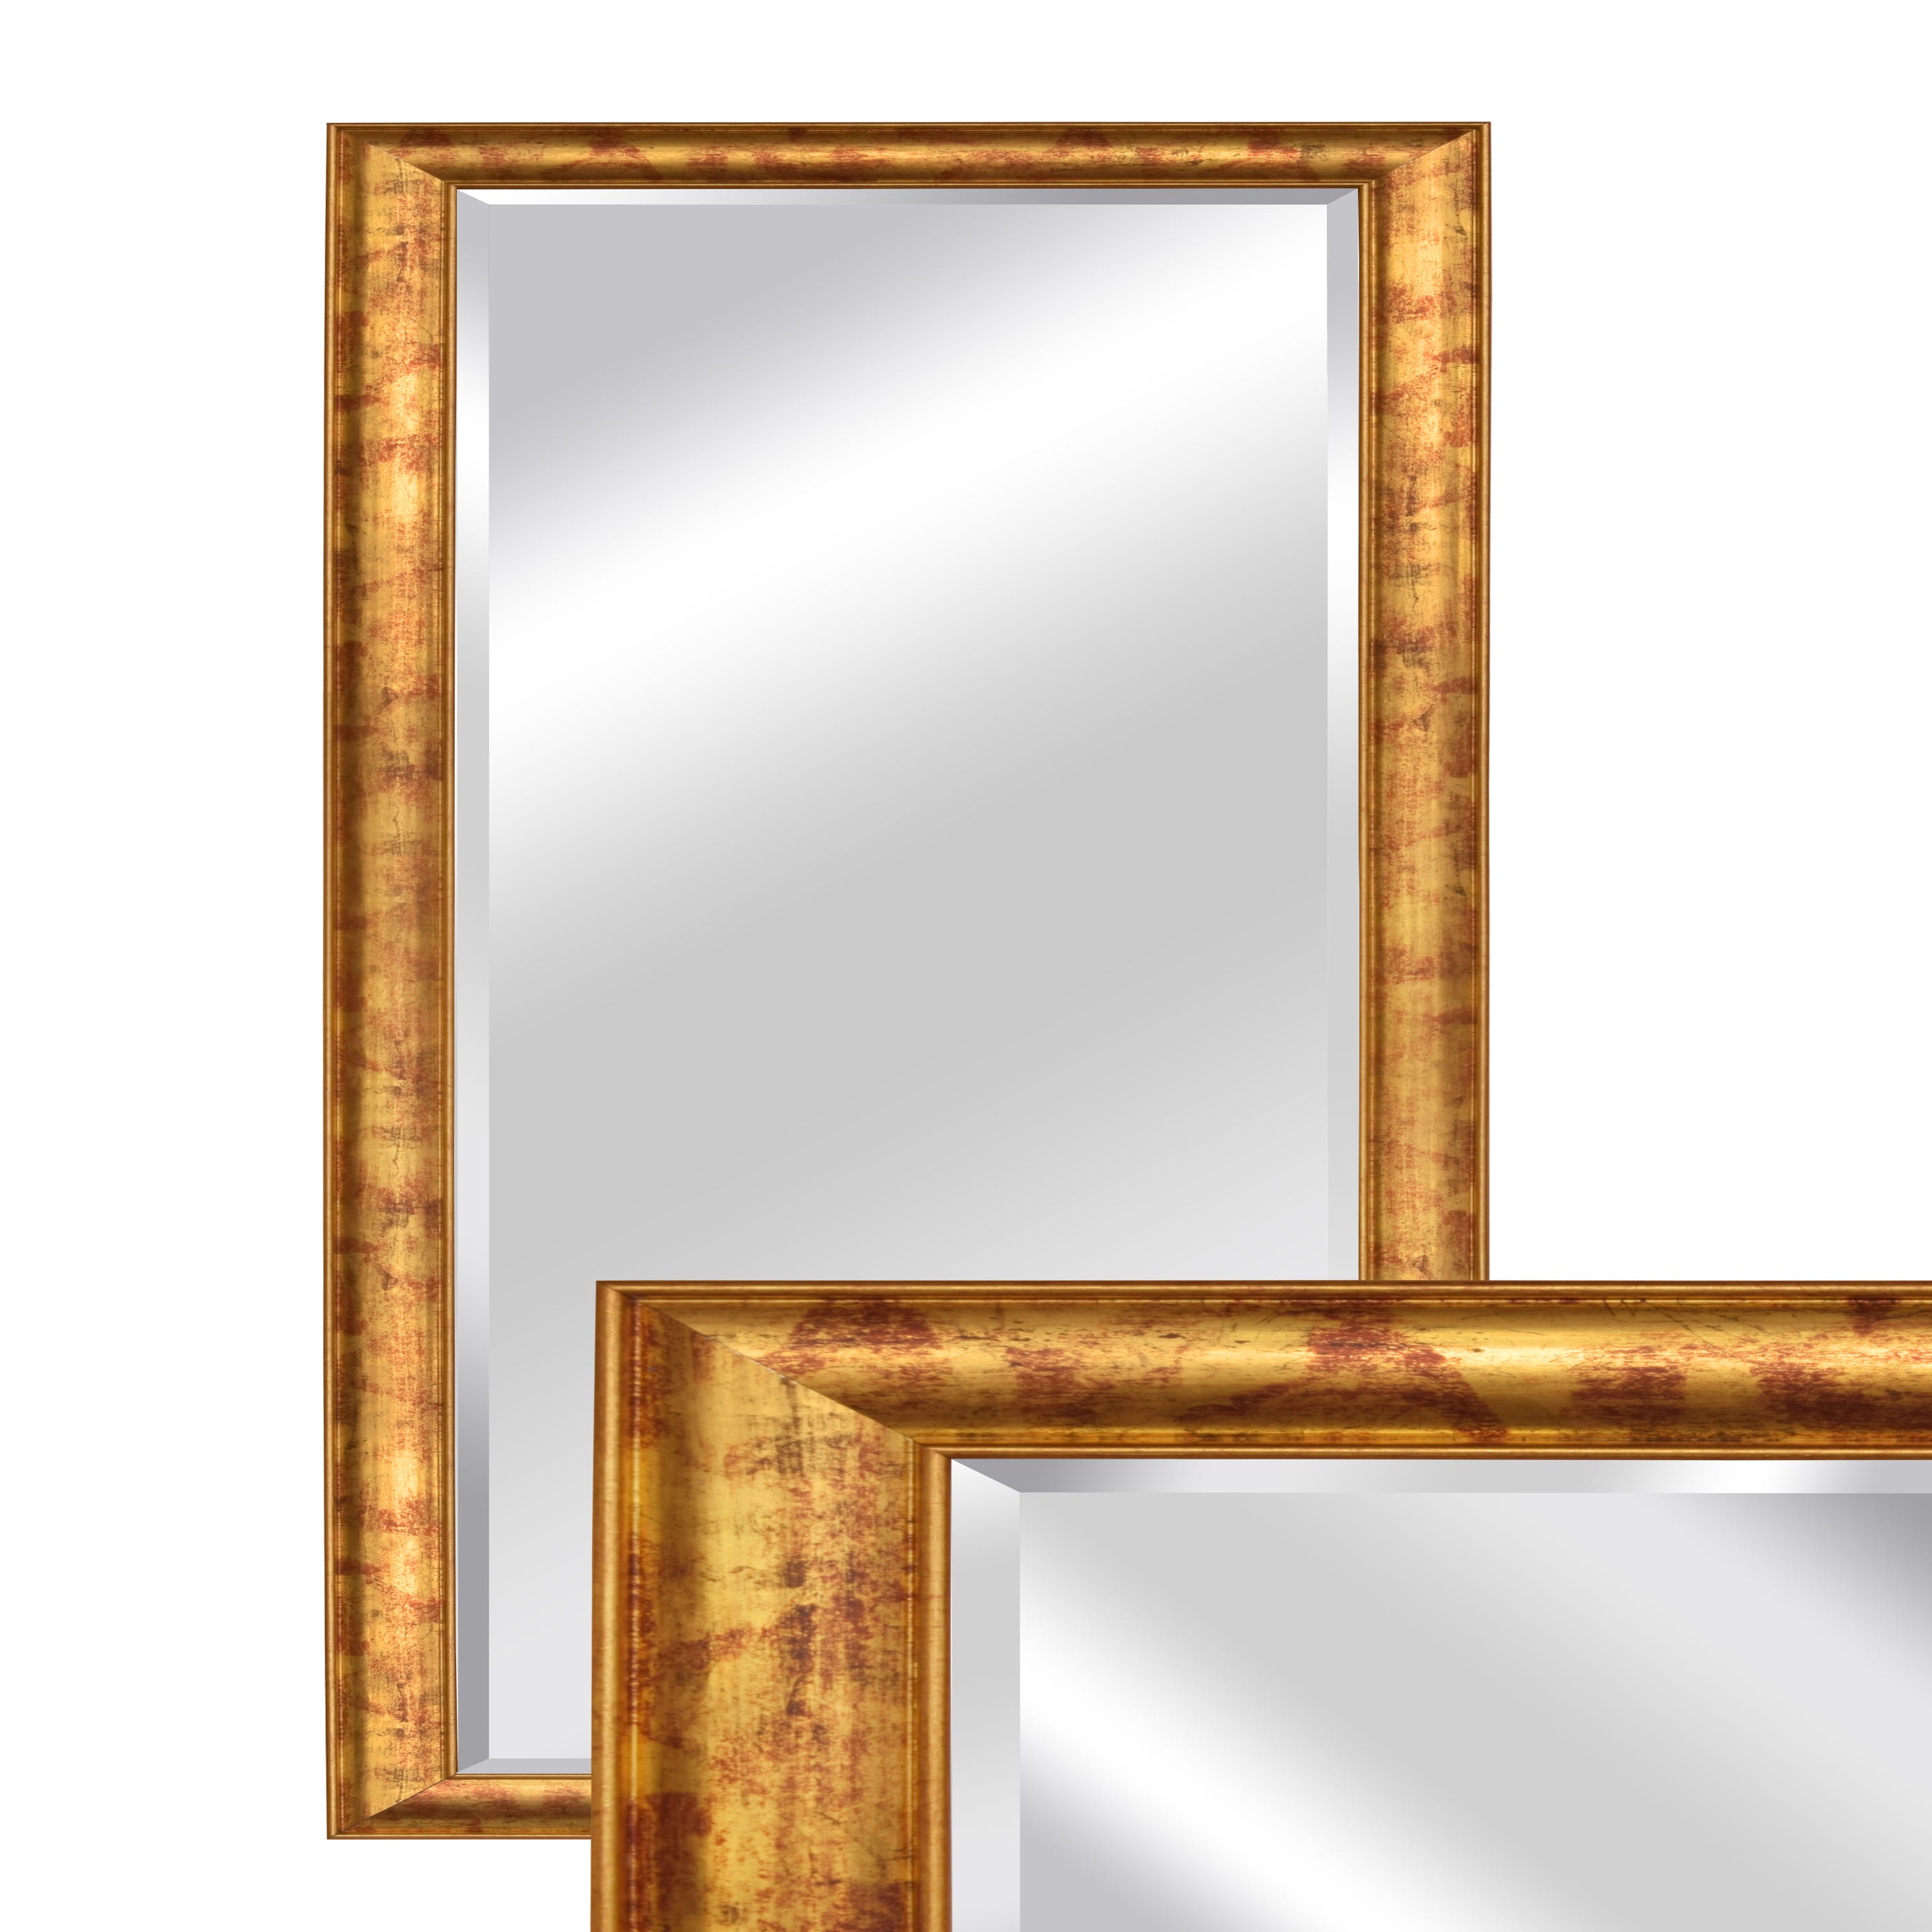 Specchio da parete con cornice rettangolare in legno.